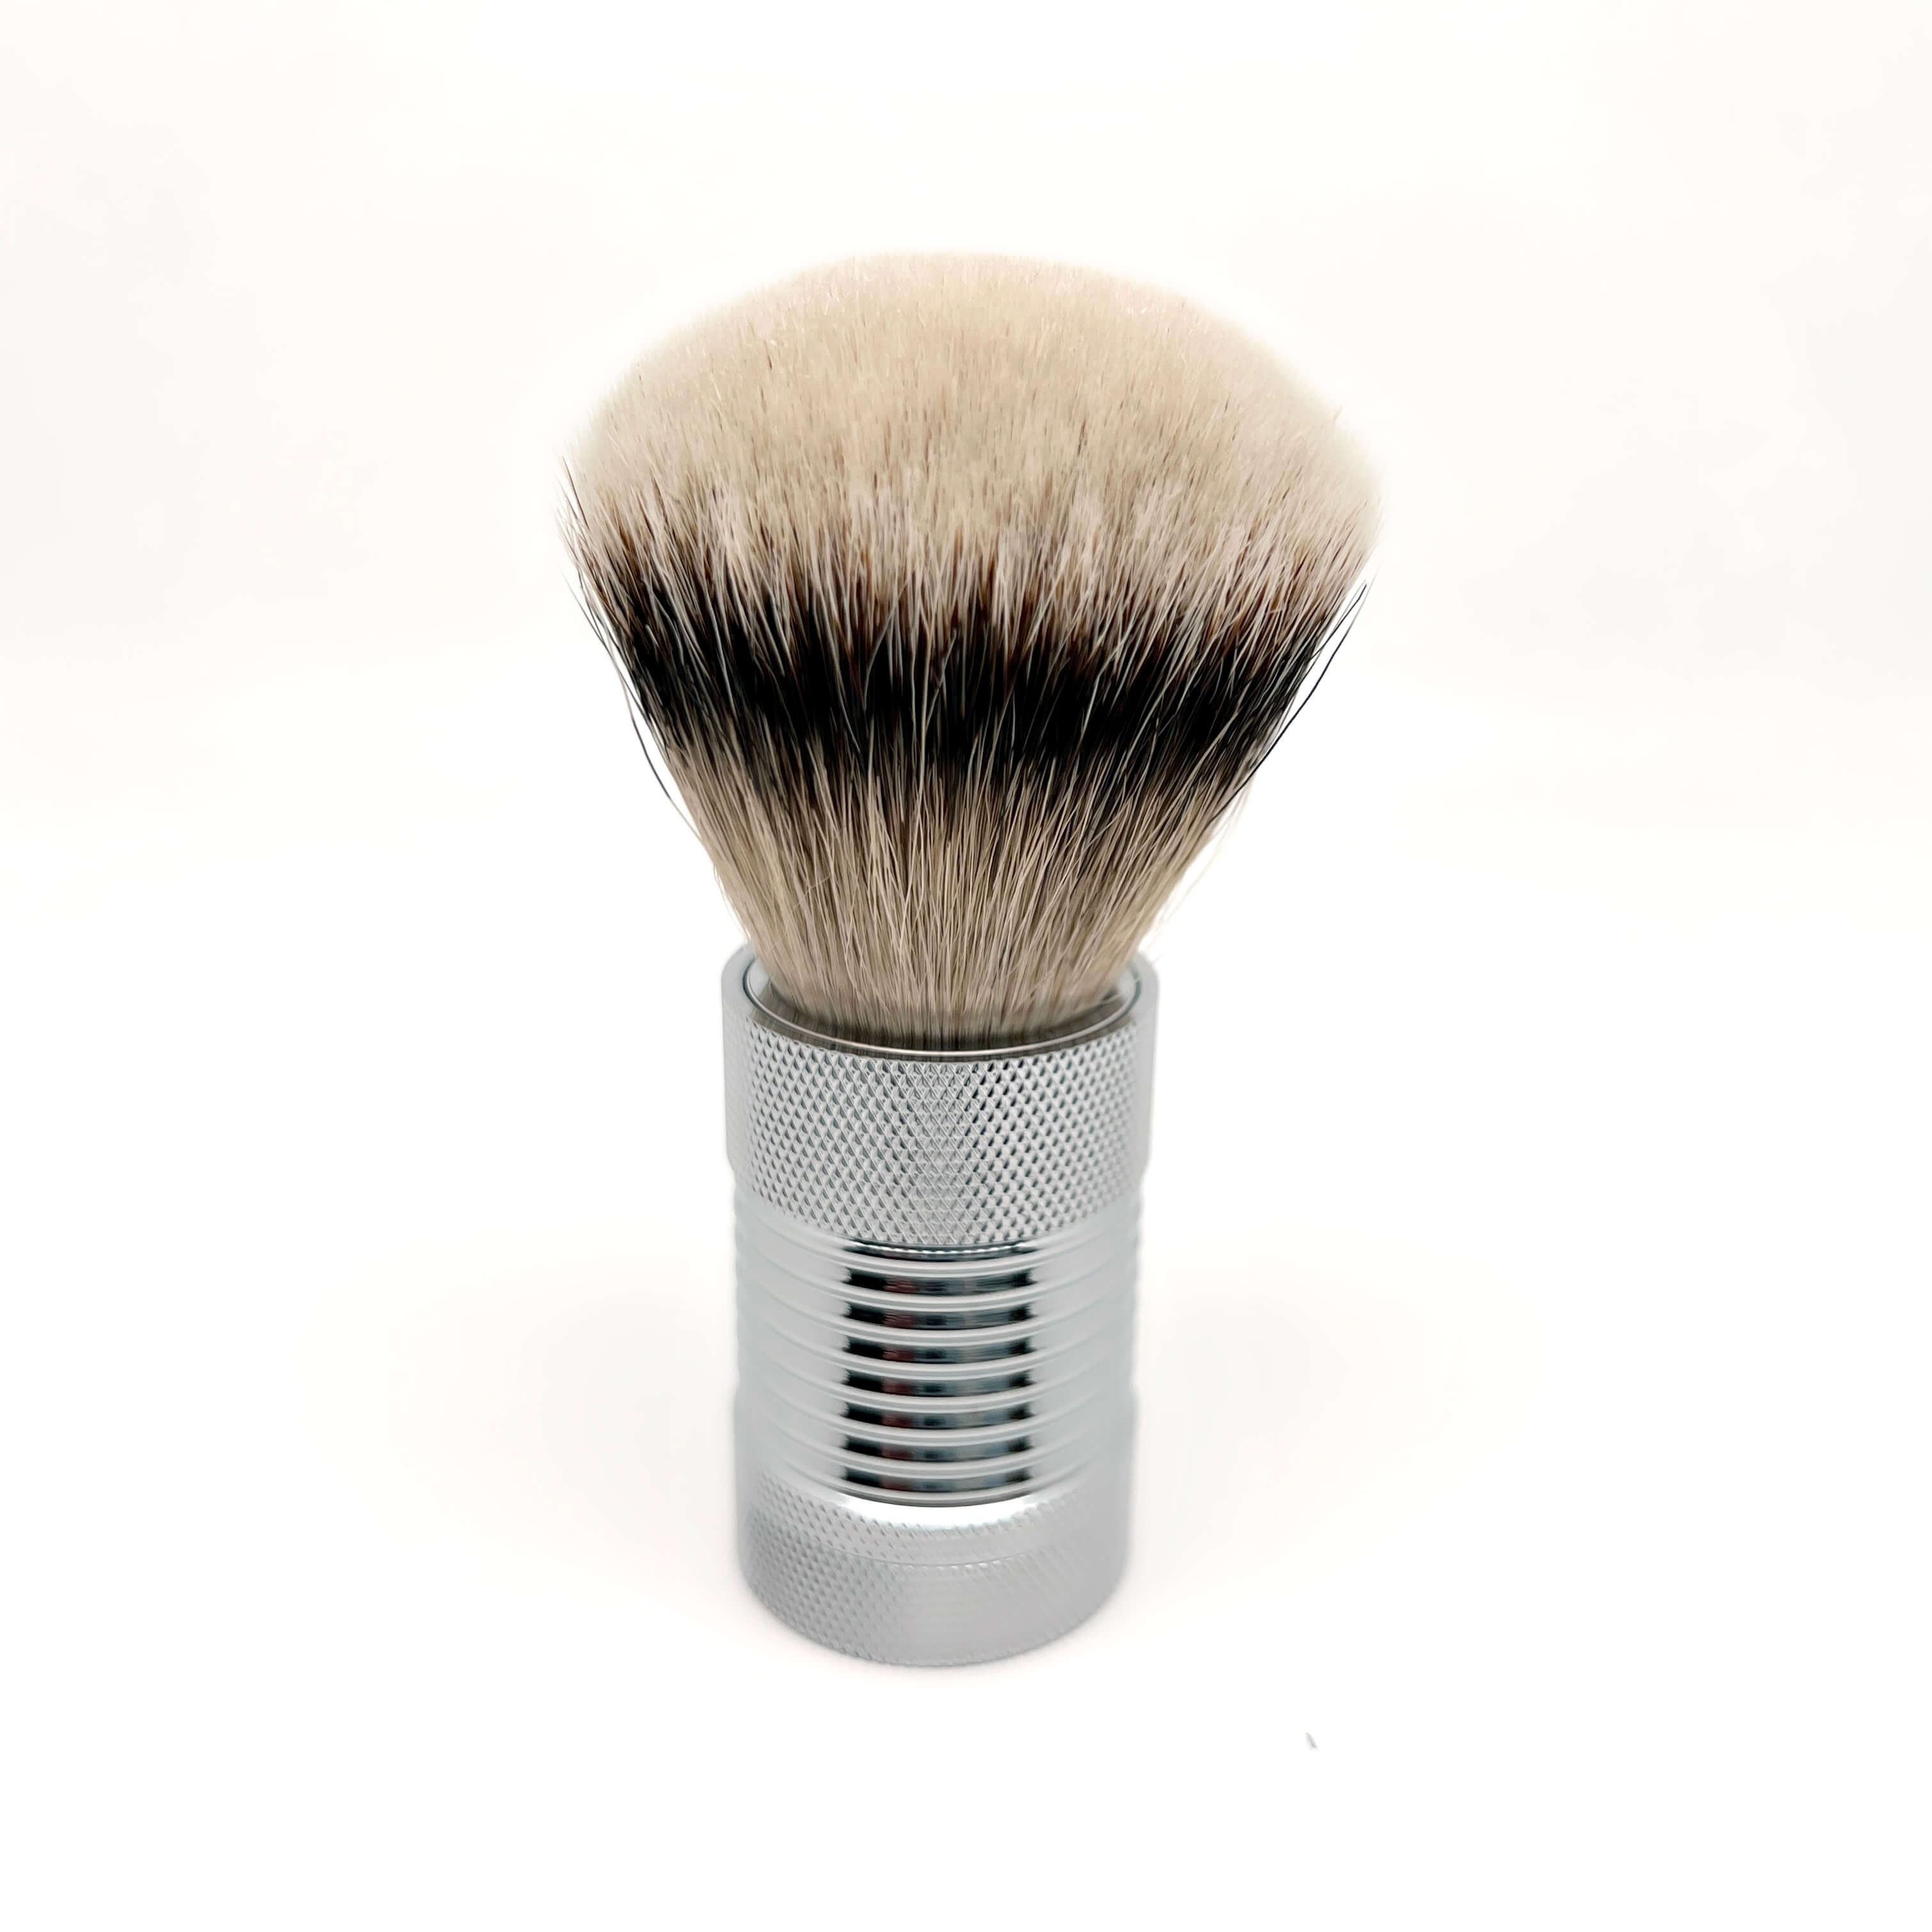 SHD Silvertip Badger с ручкой из нержавеющей стали, цельная помазок для бритья, инструмент для влажного бритья